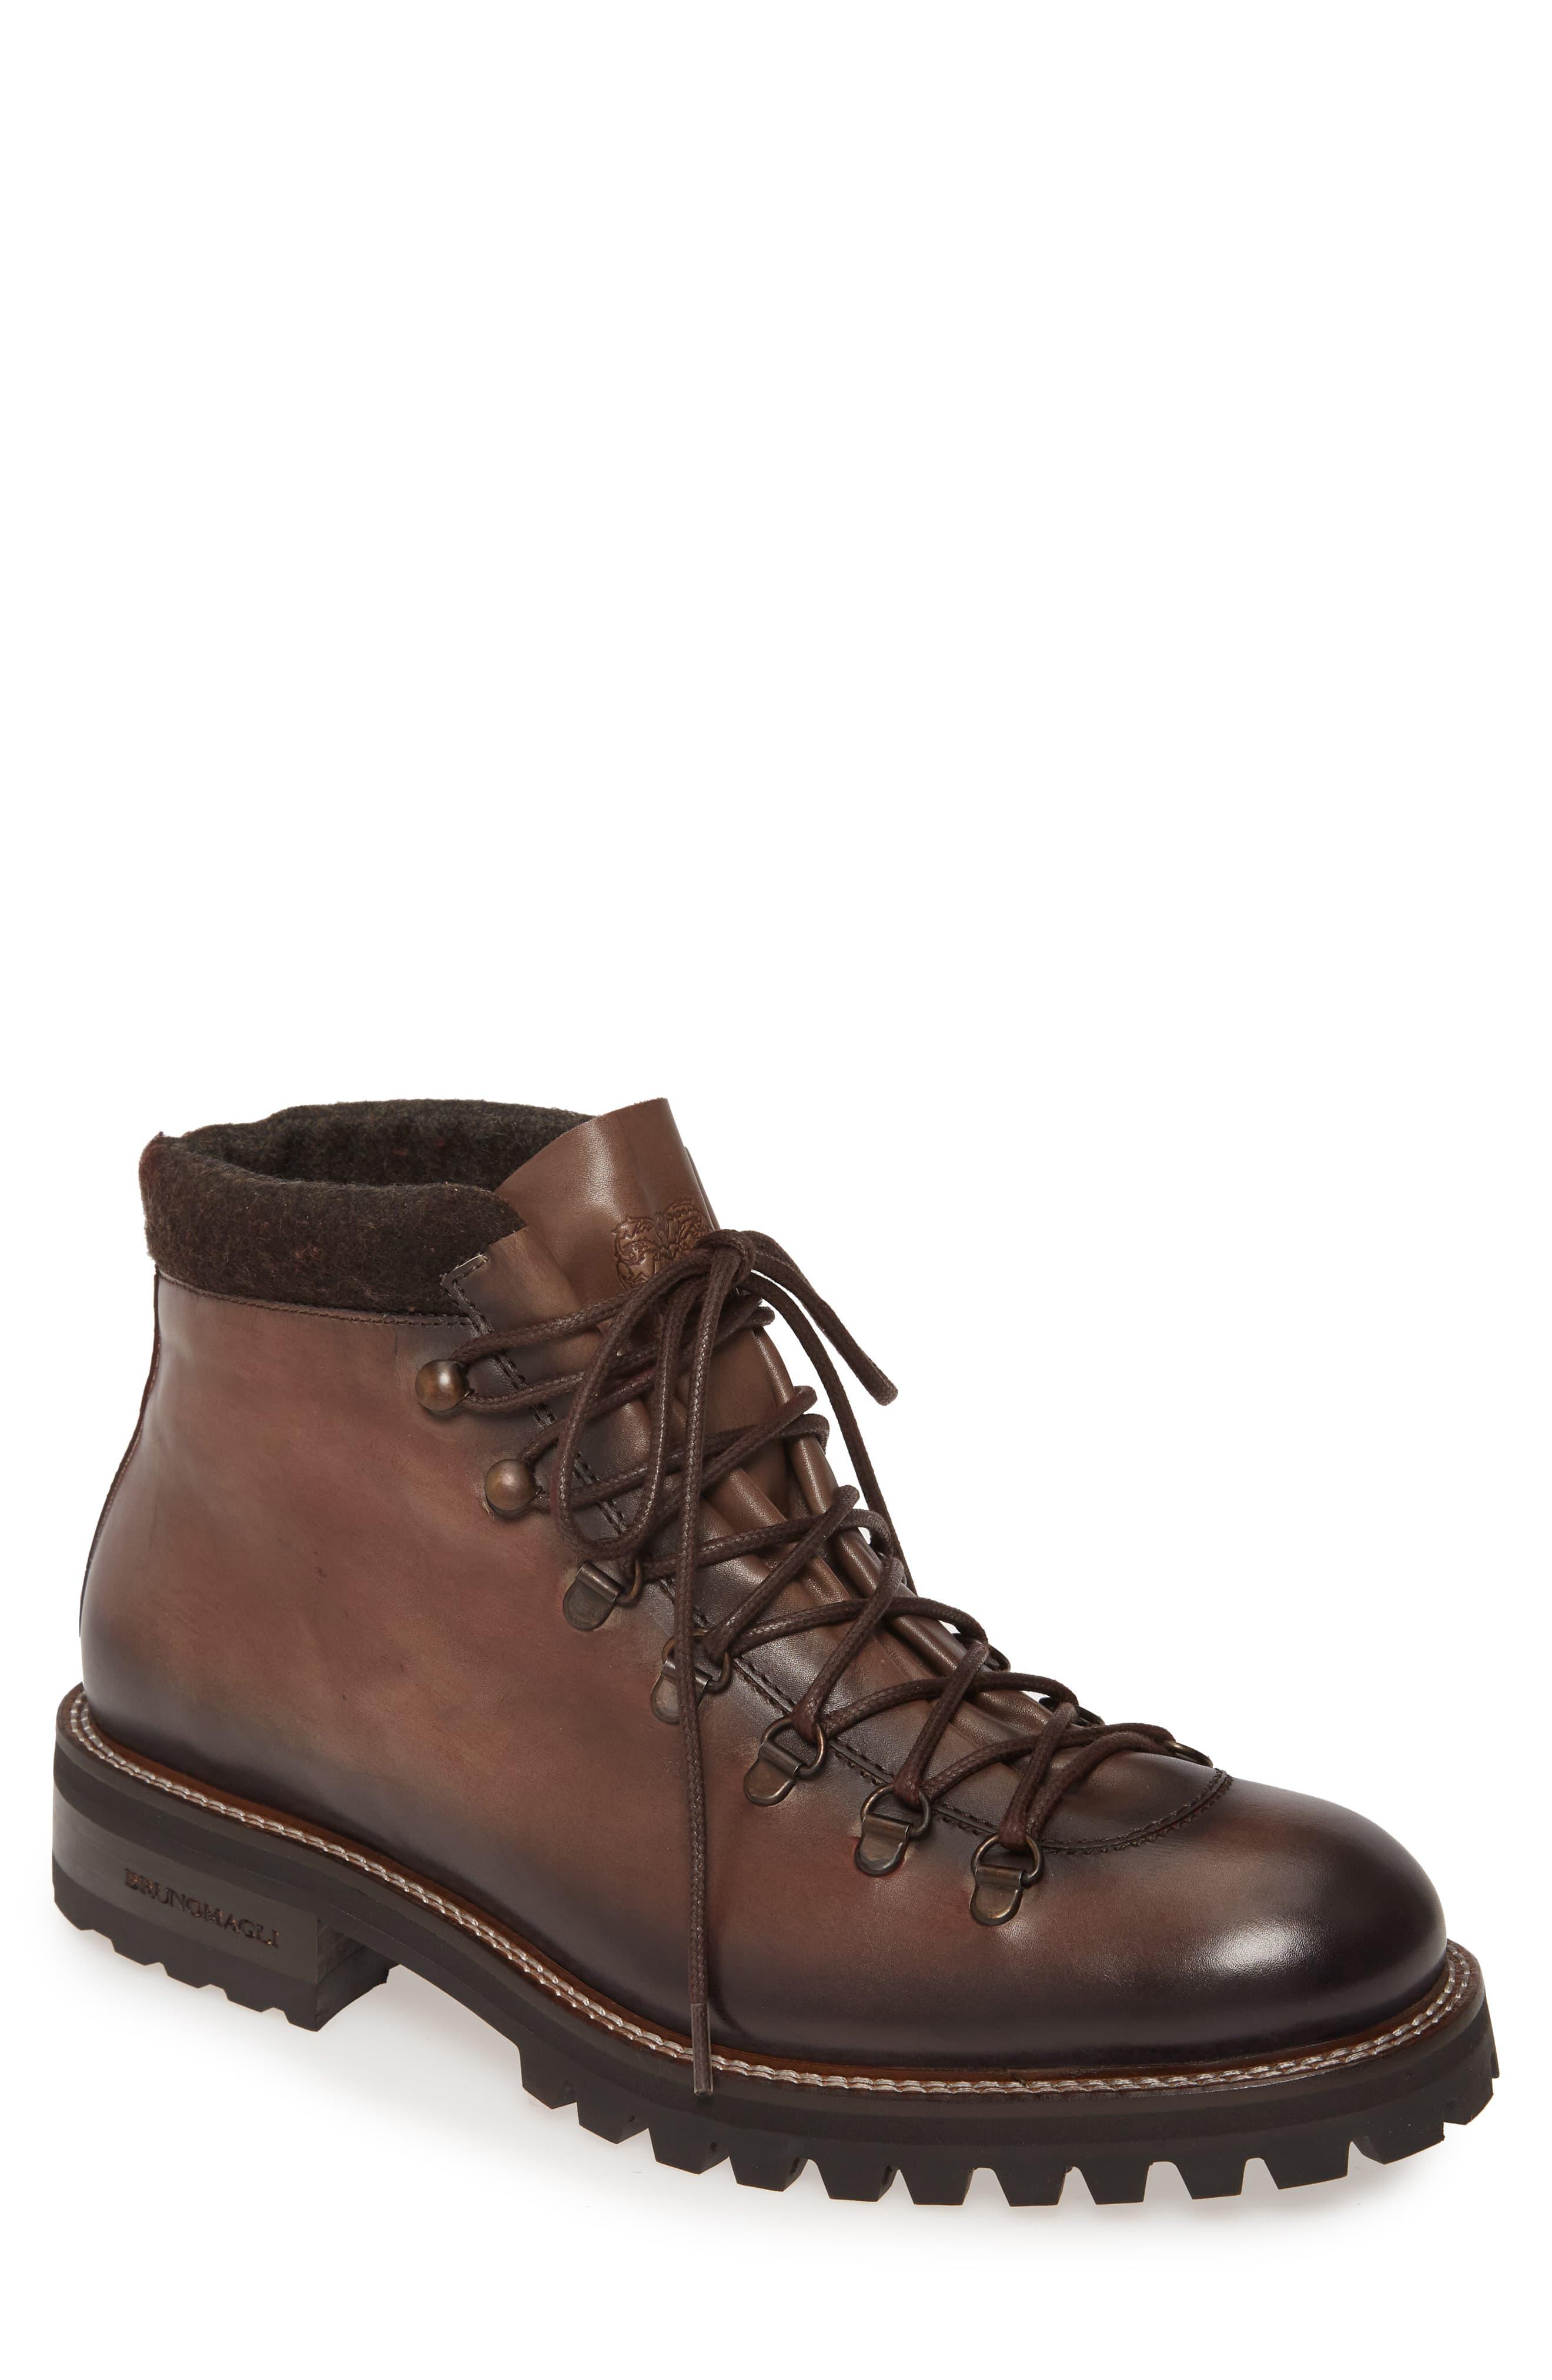 Bruno Magli Leather Alpino Mid Plain Toe Boot in Dark Brown Leather ...